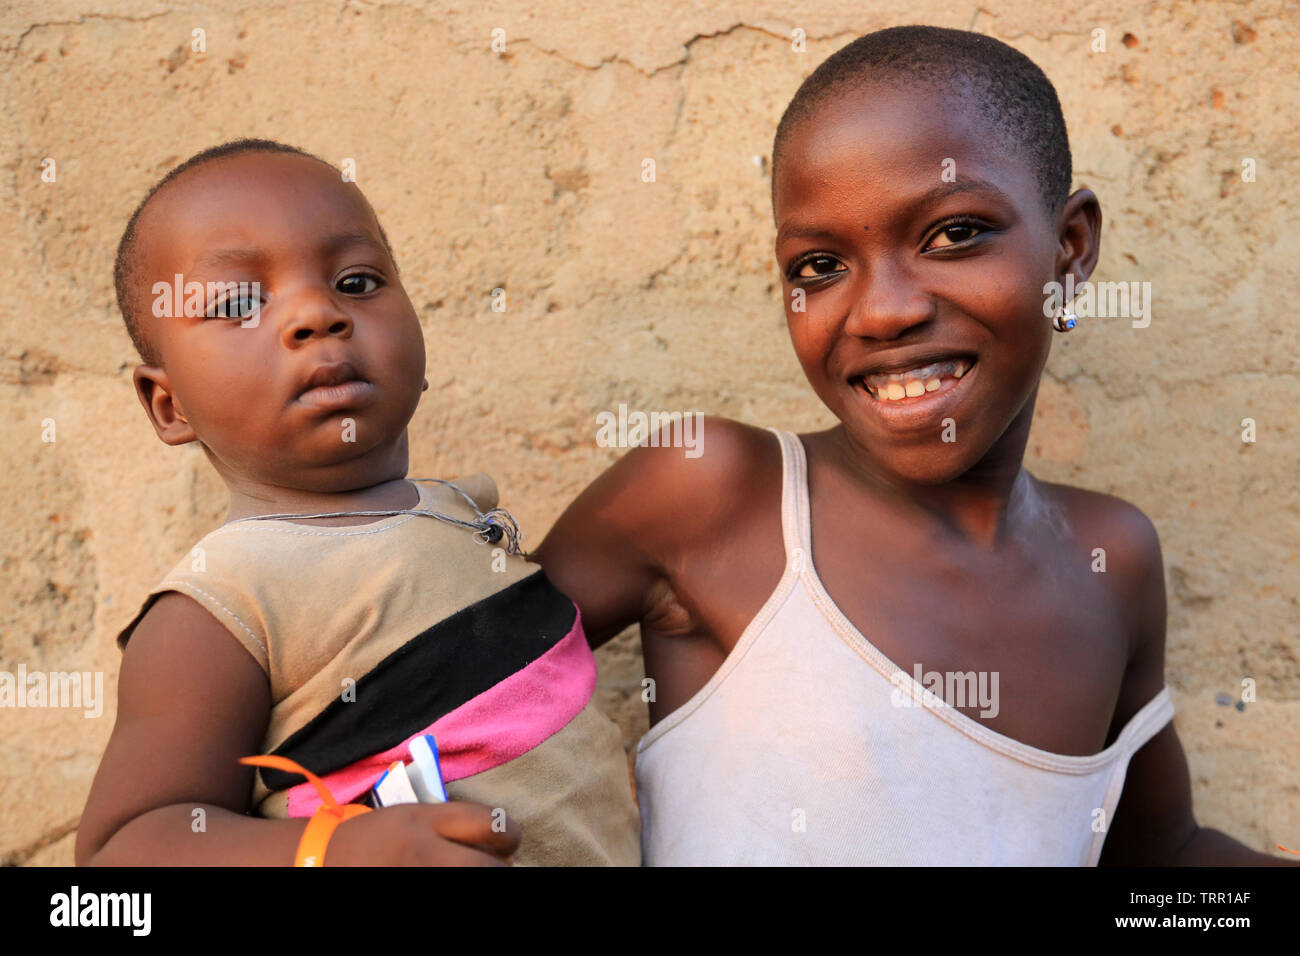 Ritratti d'une maman Togolaise et son bébé. La convenzione di Lomé. Il Togo. Afrique de l'Ouest. Foto Stock